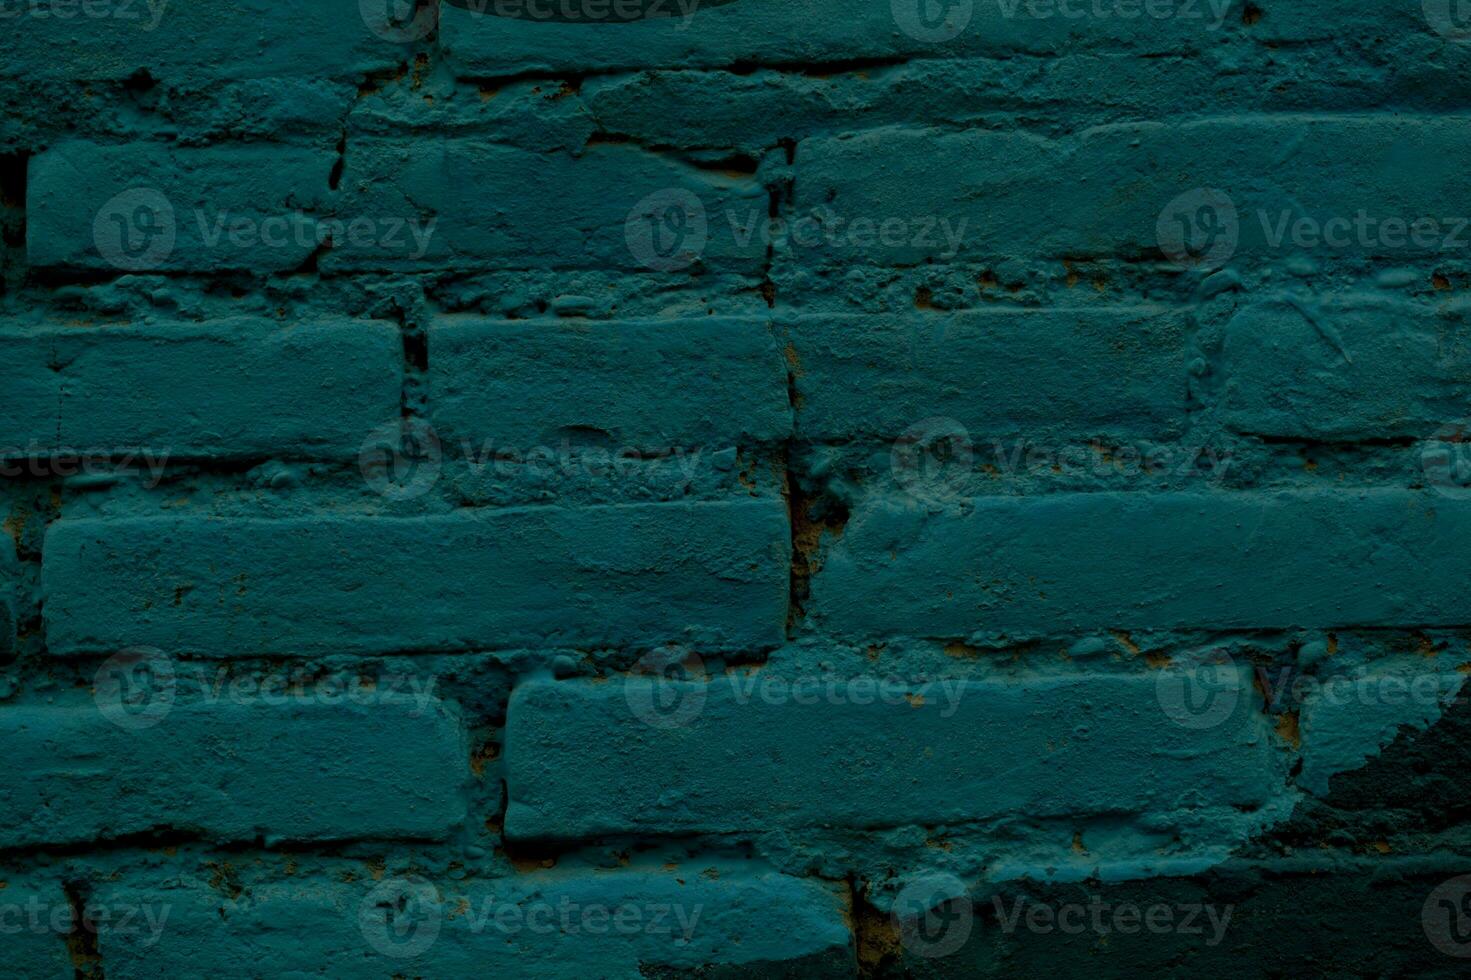 geschilderd blauw steen muur achtergrond structuur foto